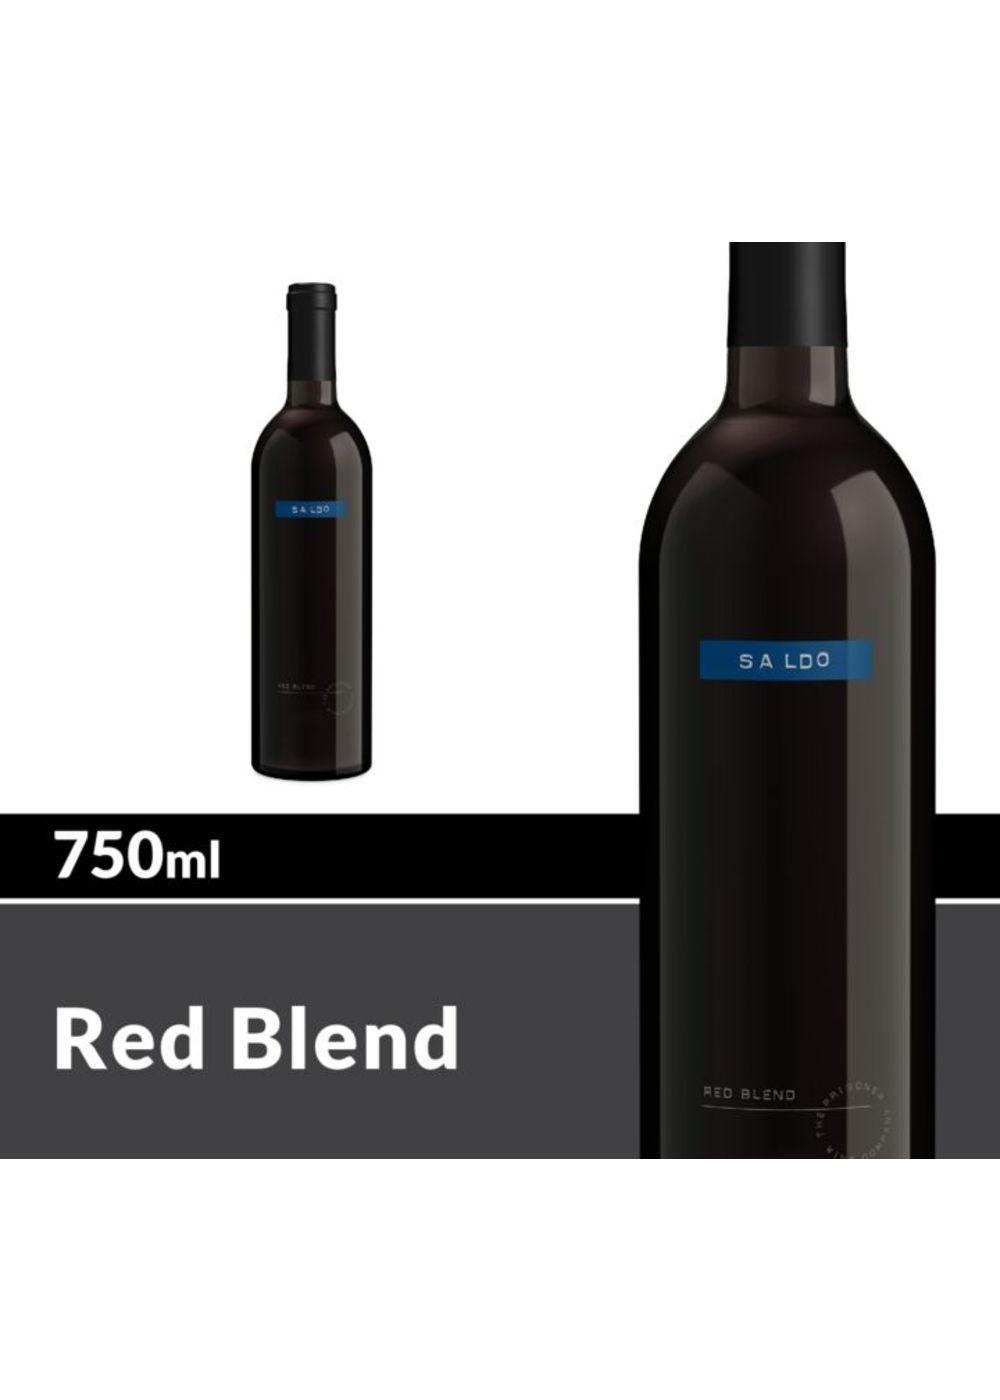 Saldo Red Blend Red Wine Bottle; image 5 of 6